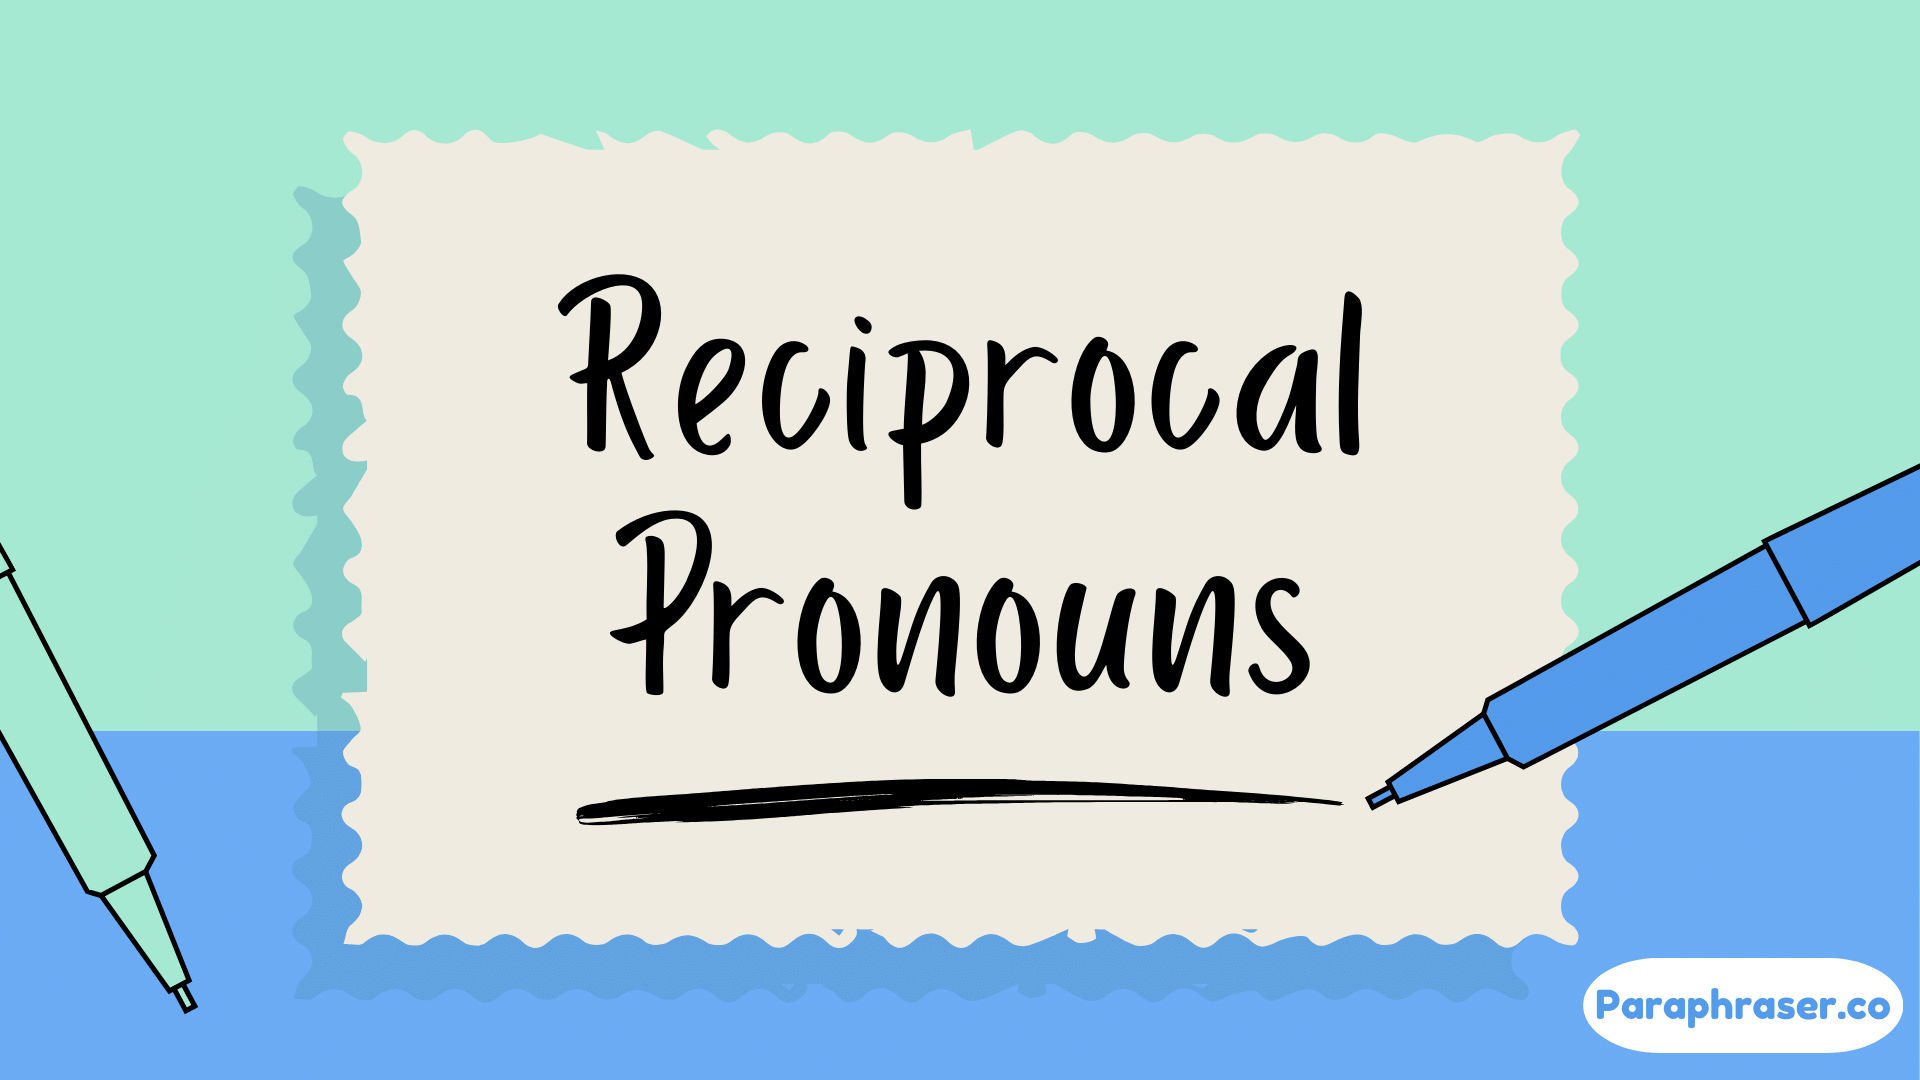 Reciprocal pronouns